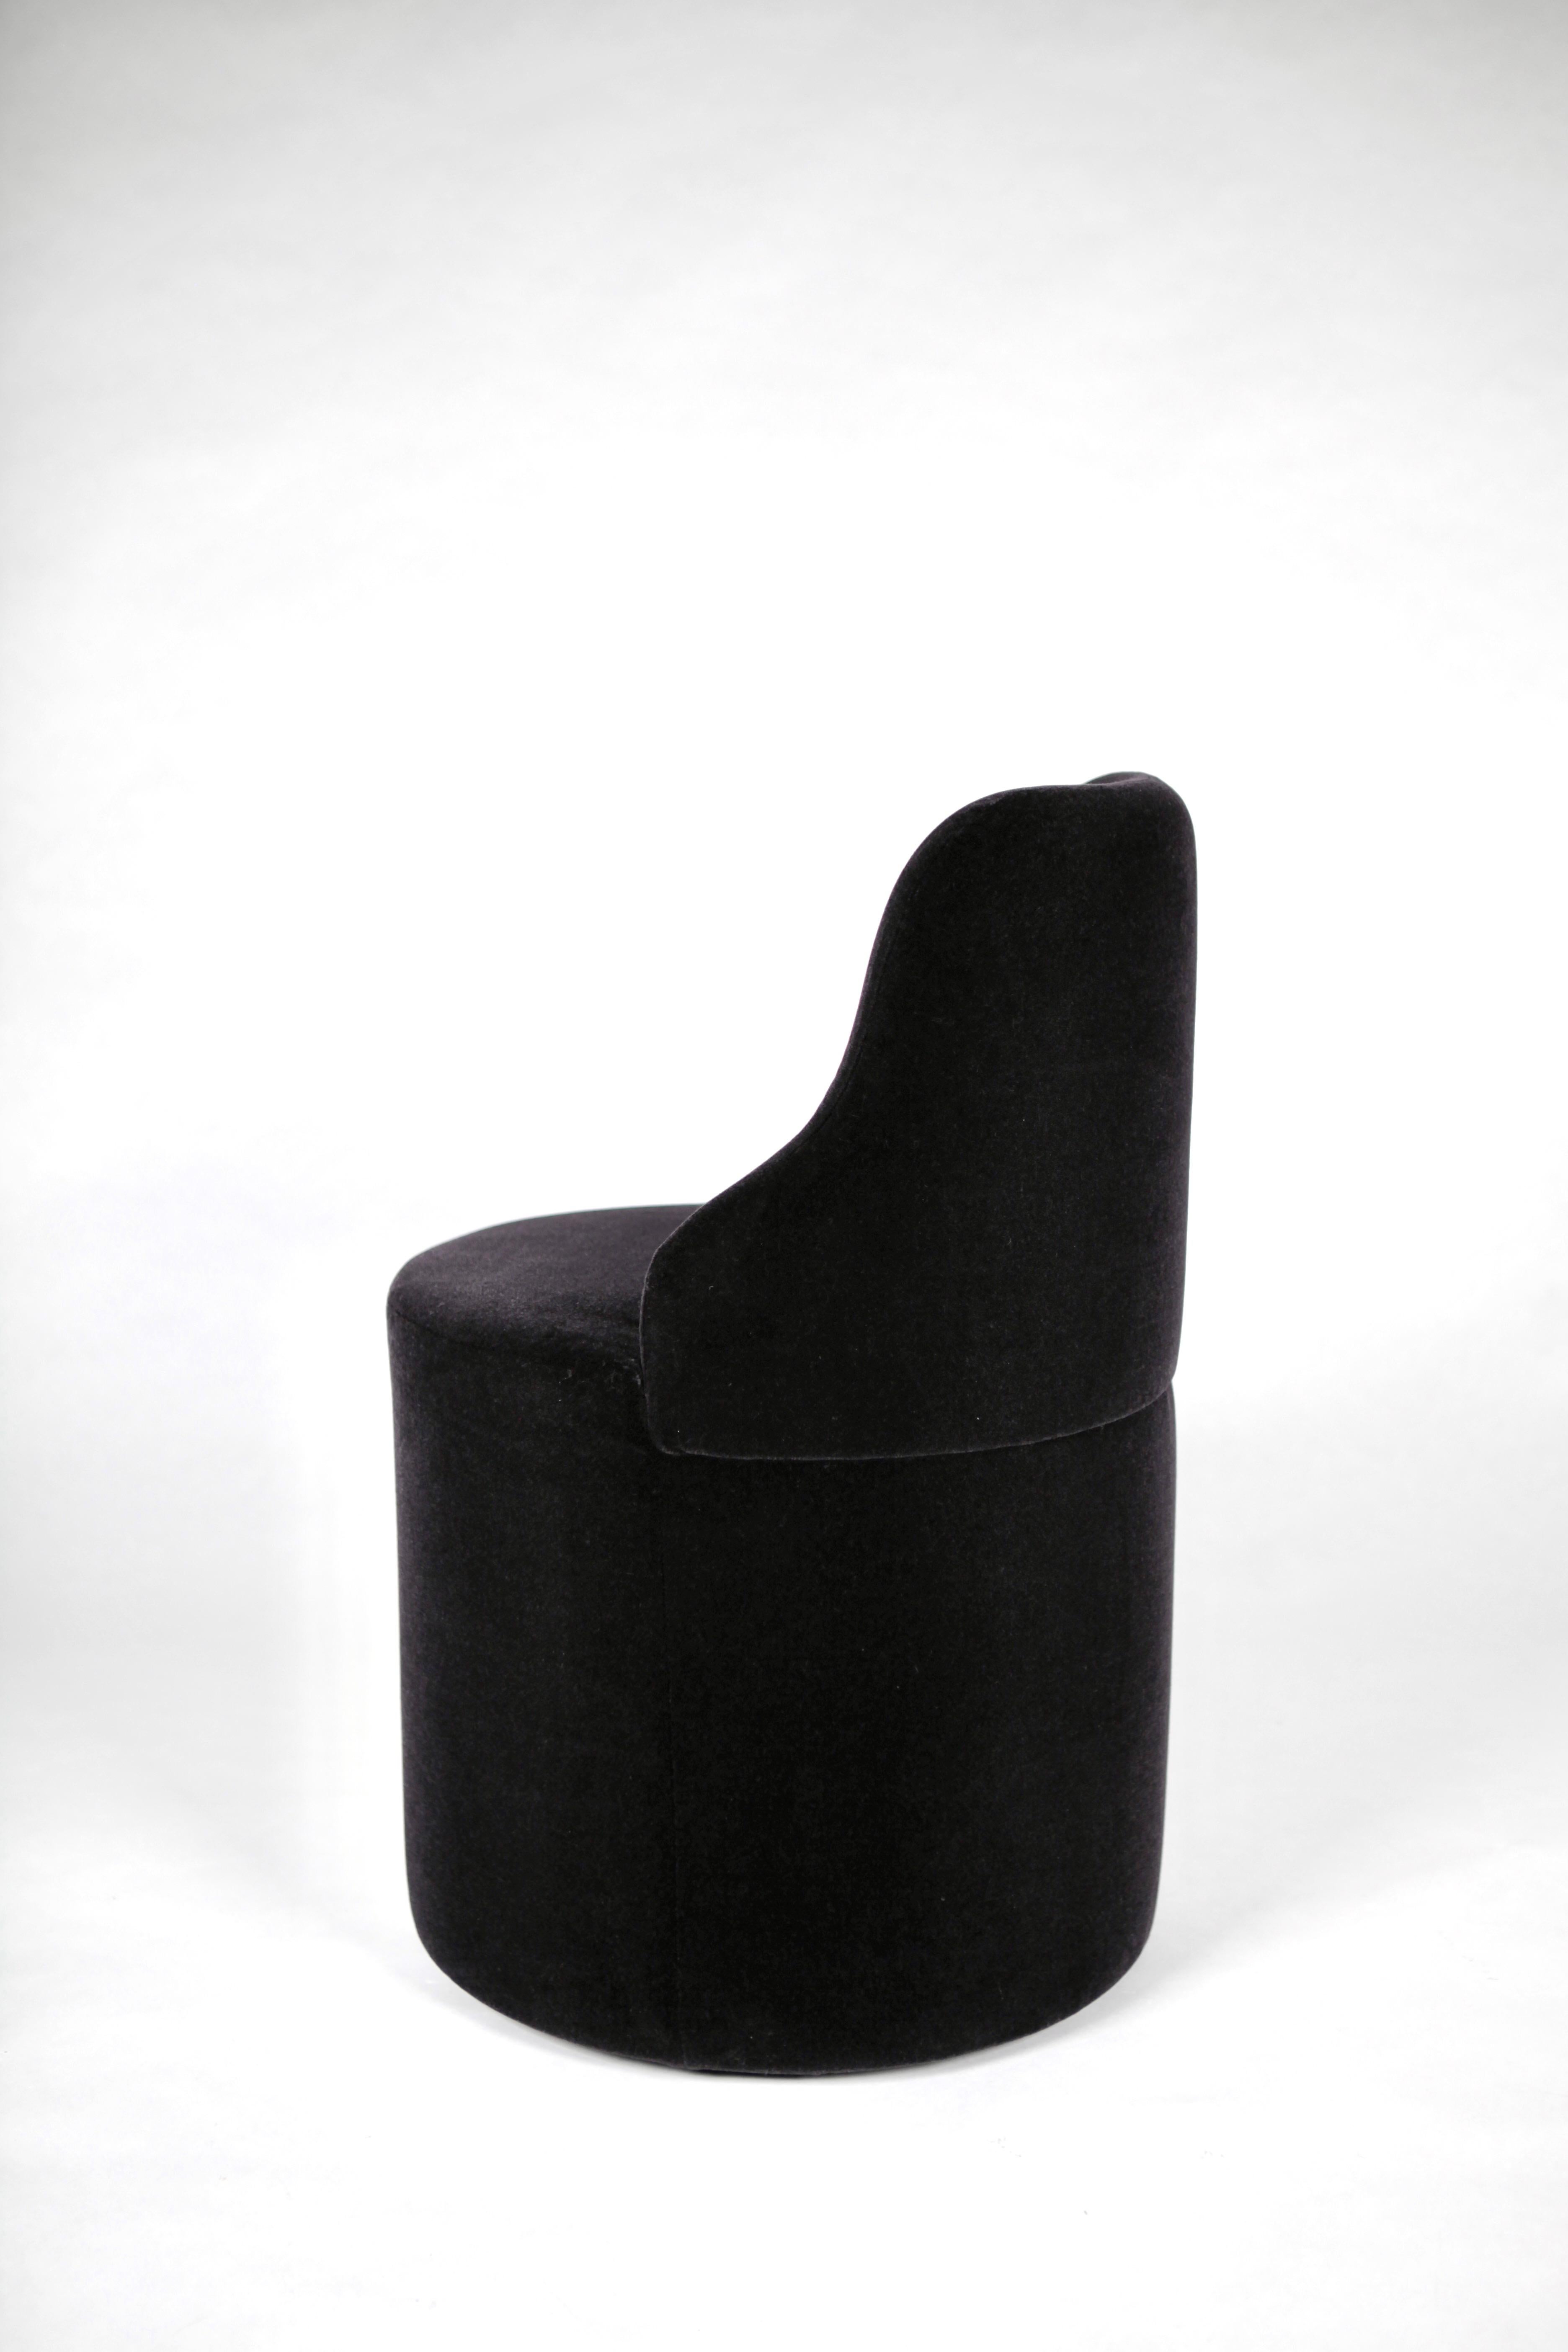 Late 20th Century Luigi Caccia Dominioni, 'Manzoni' Chair, Edition Azucena, Milano, 1975